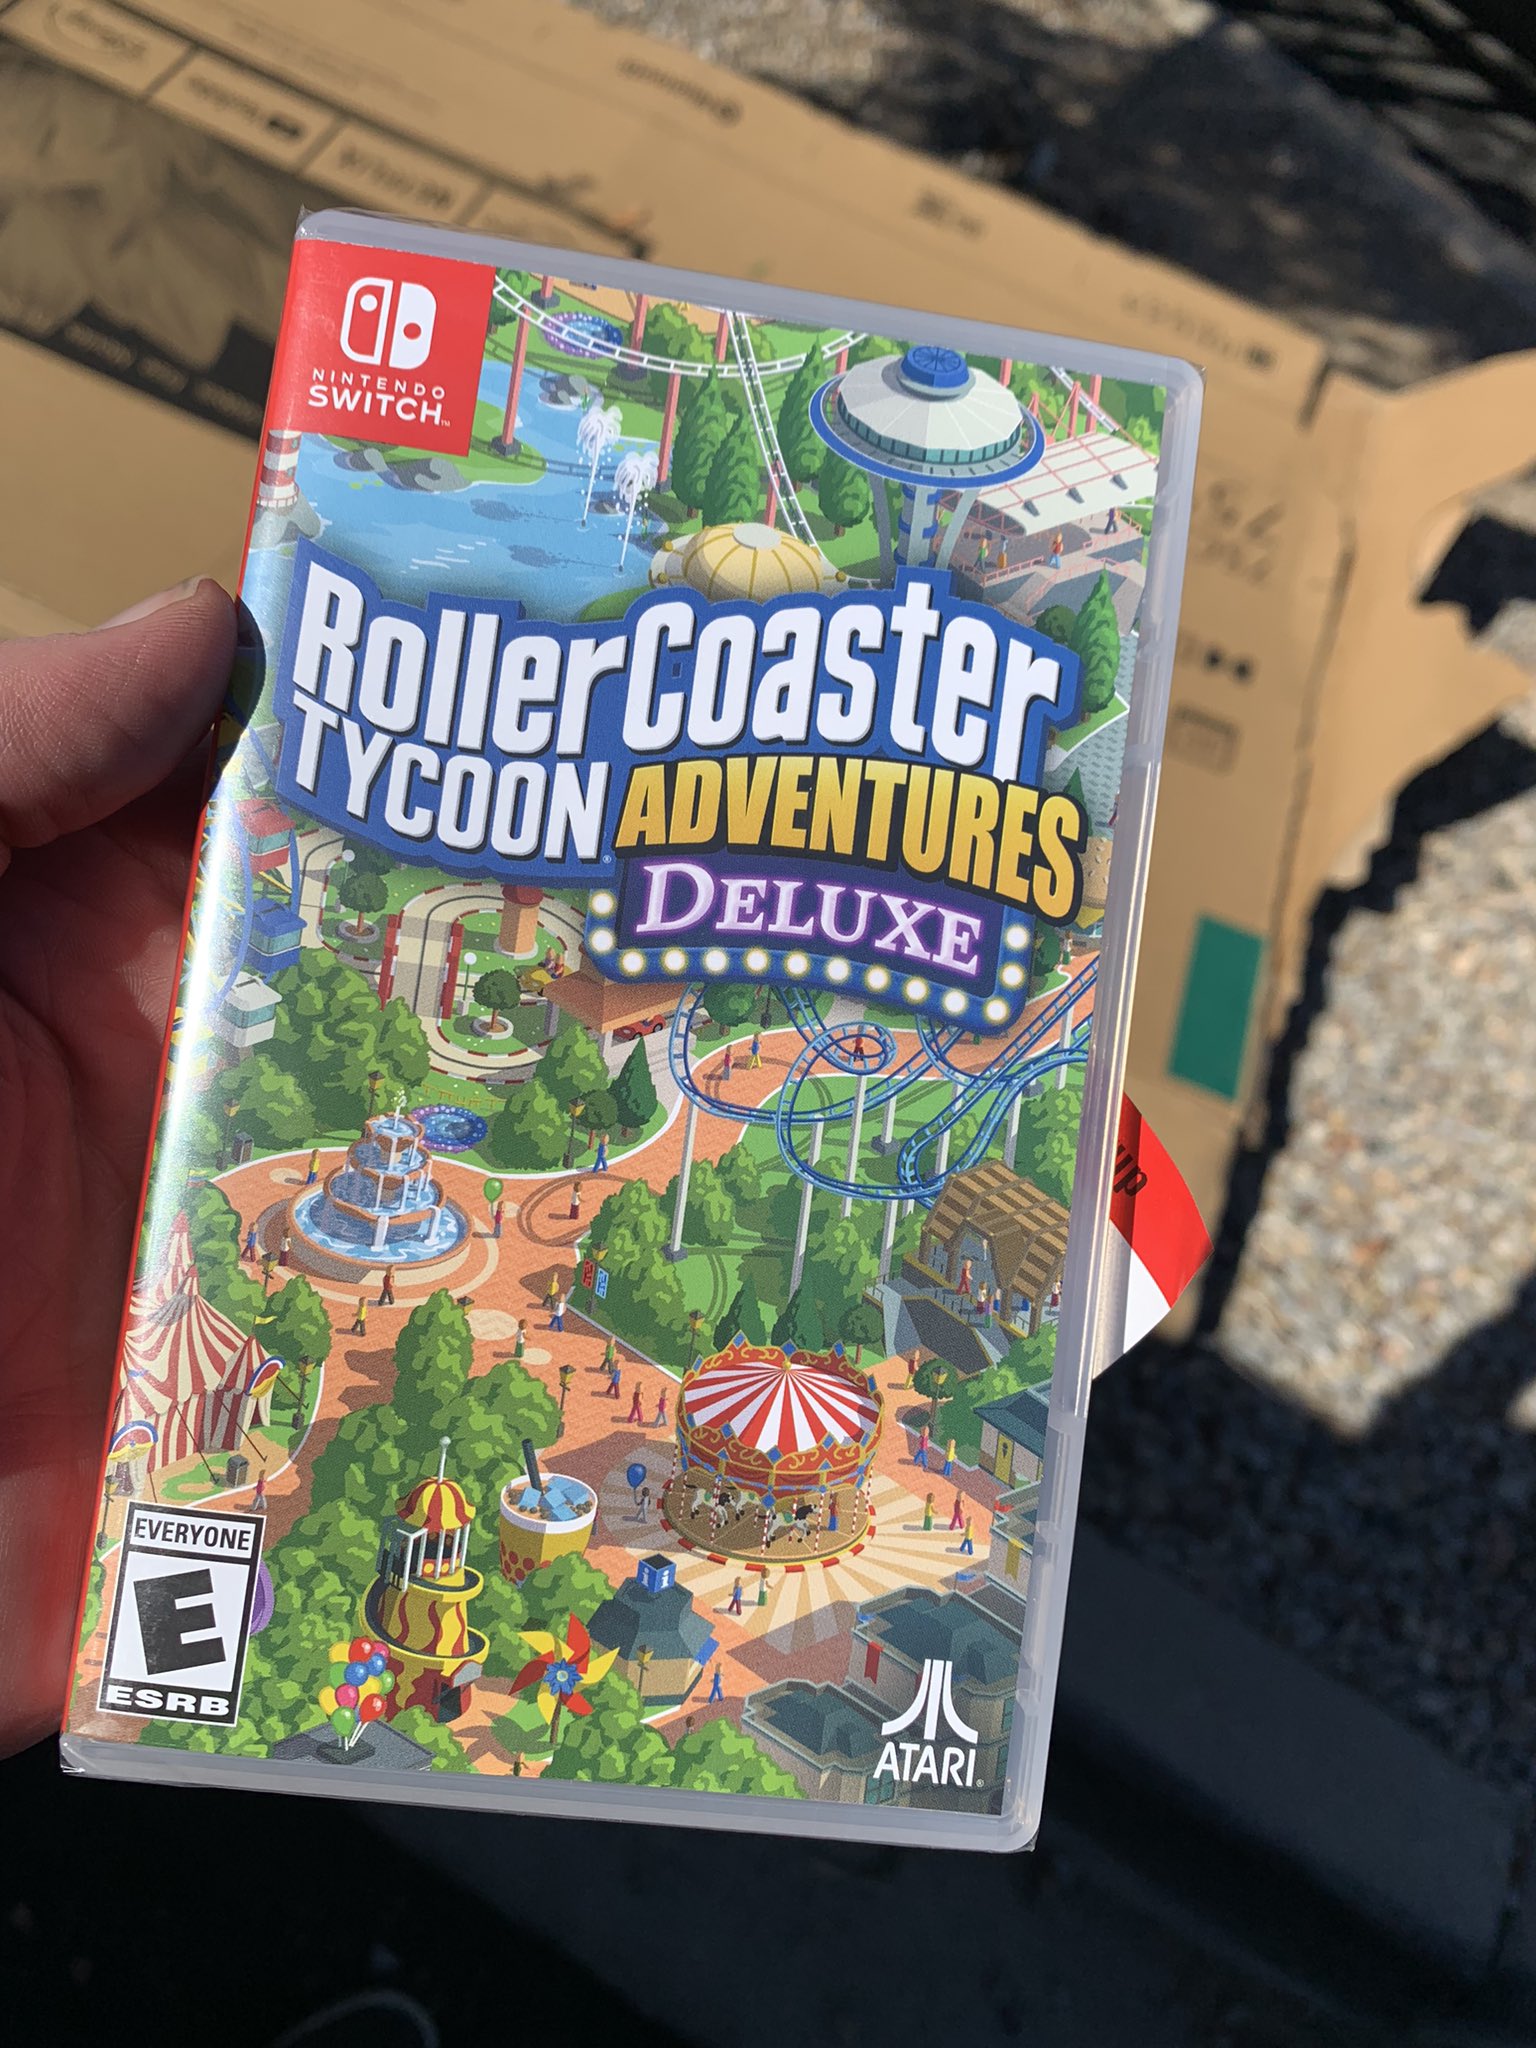 Rollercoaster Tycoon Adventures Deluxe - Nintendo Switch Games